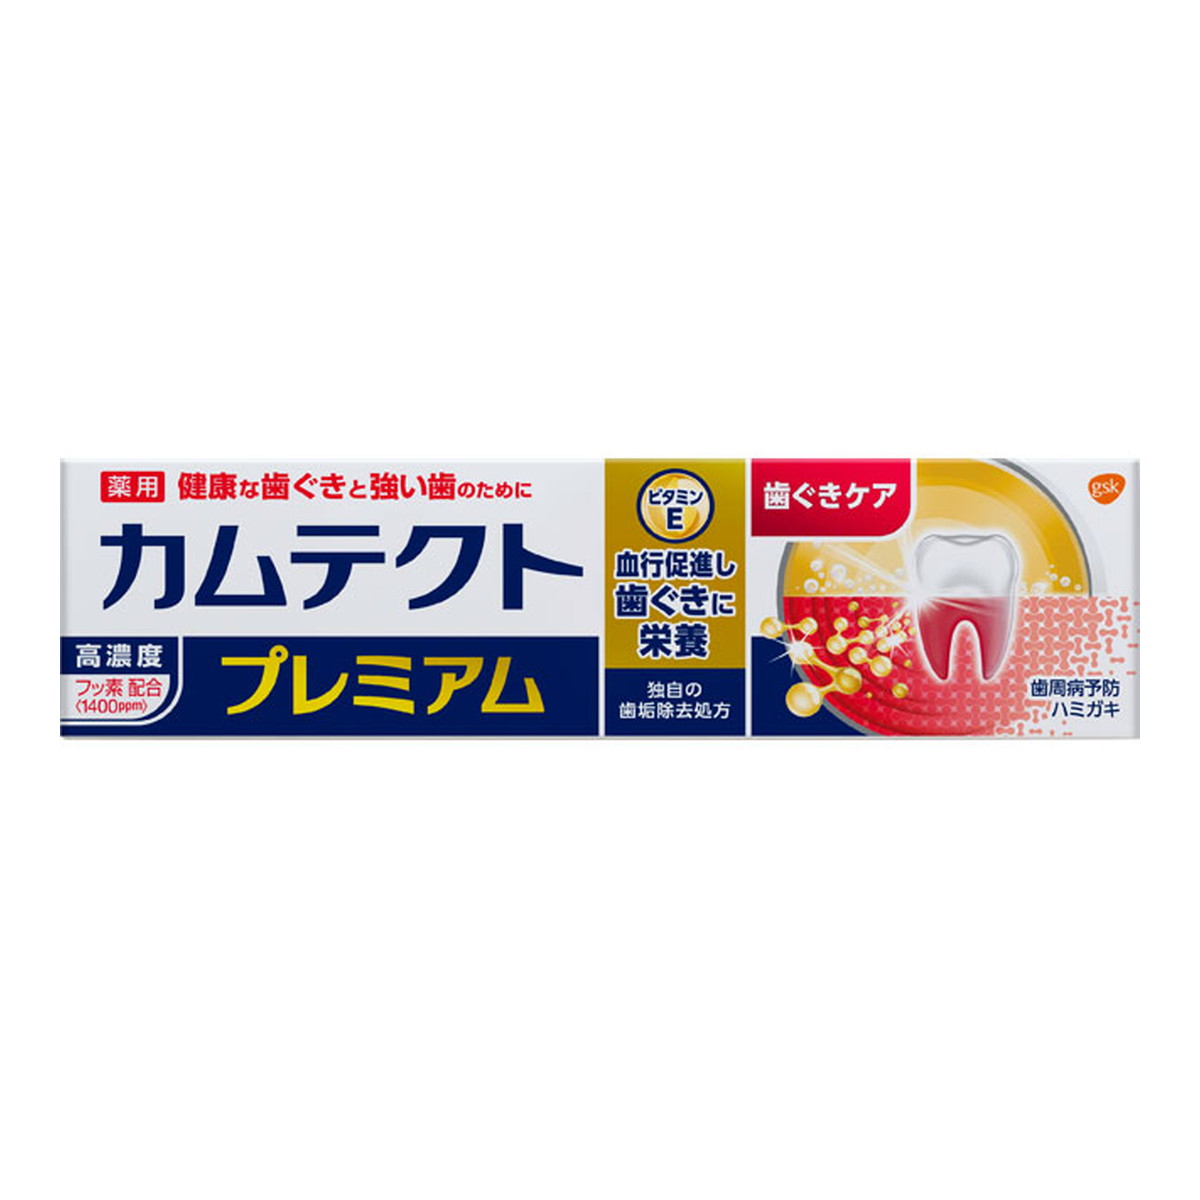 グラクソ・スミスクライン カムテクト プレミアム 歯ぐきケア 105g×6本 カムテクト 歯磨き粉の商品画像